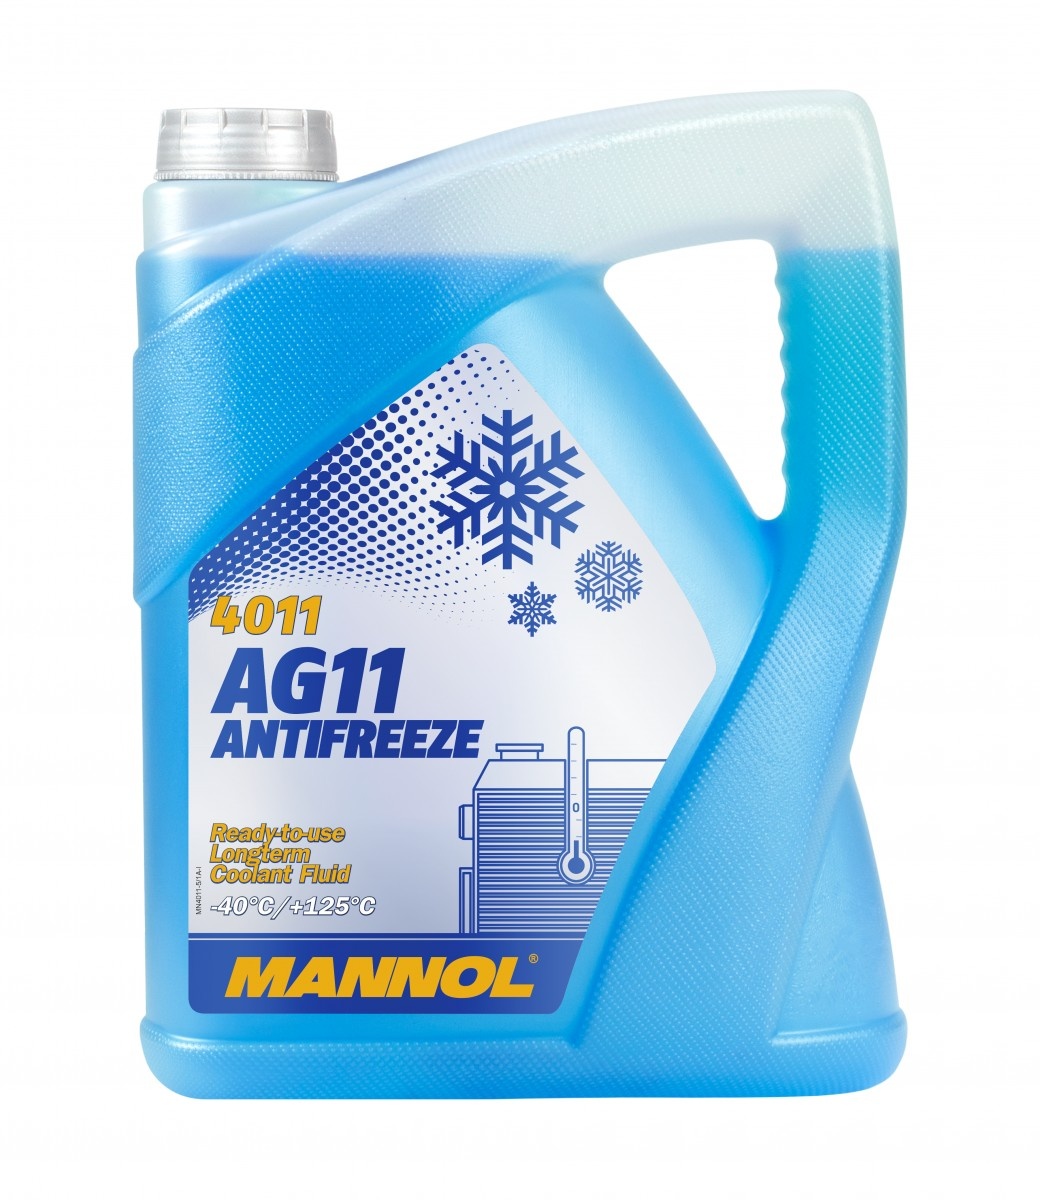 Антифриз Mannol AG11 (-40) 4011 5L